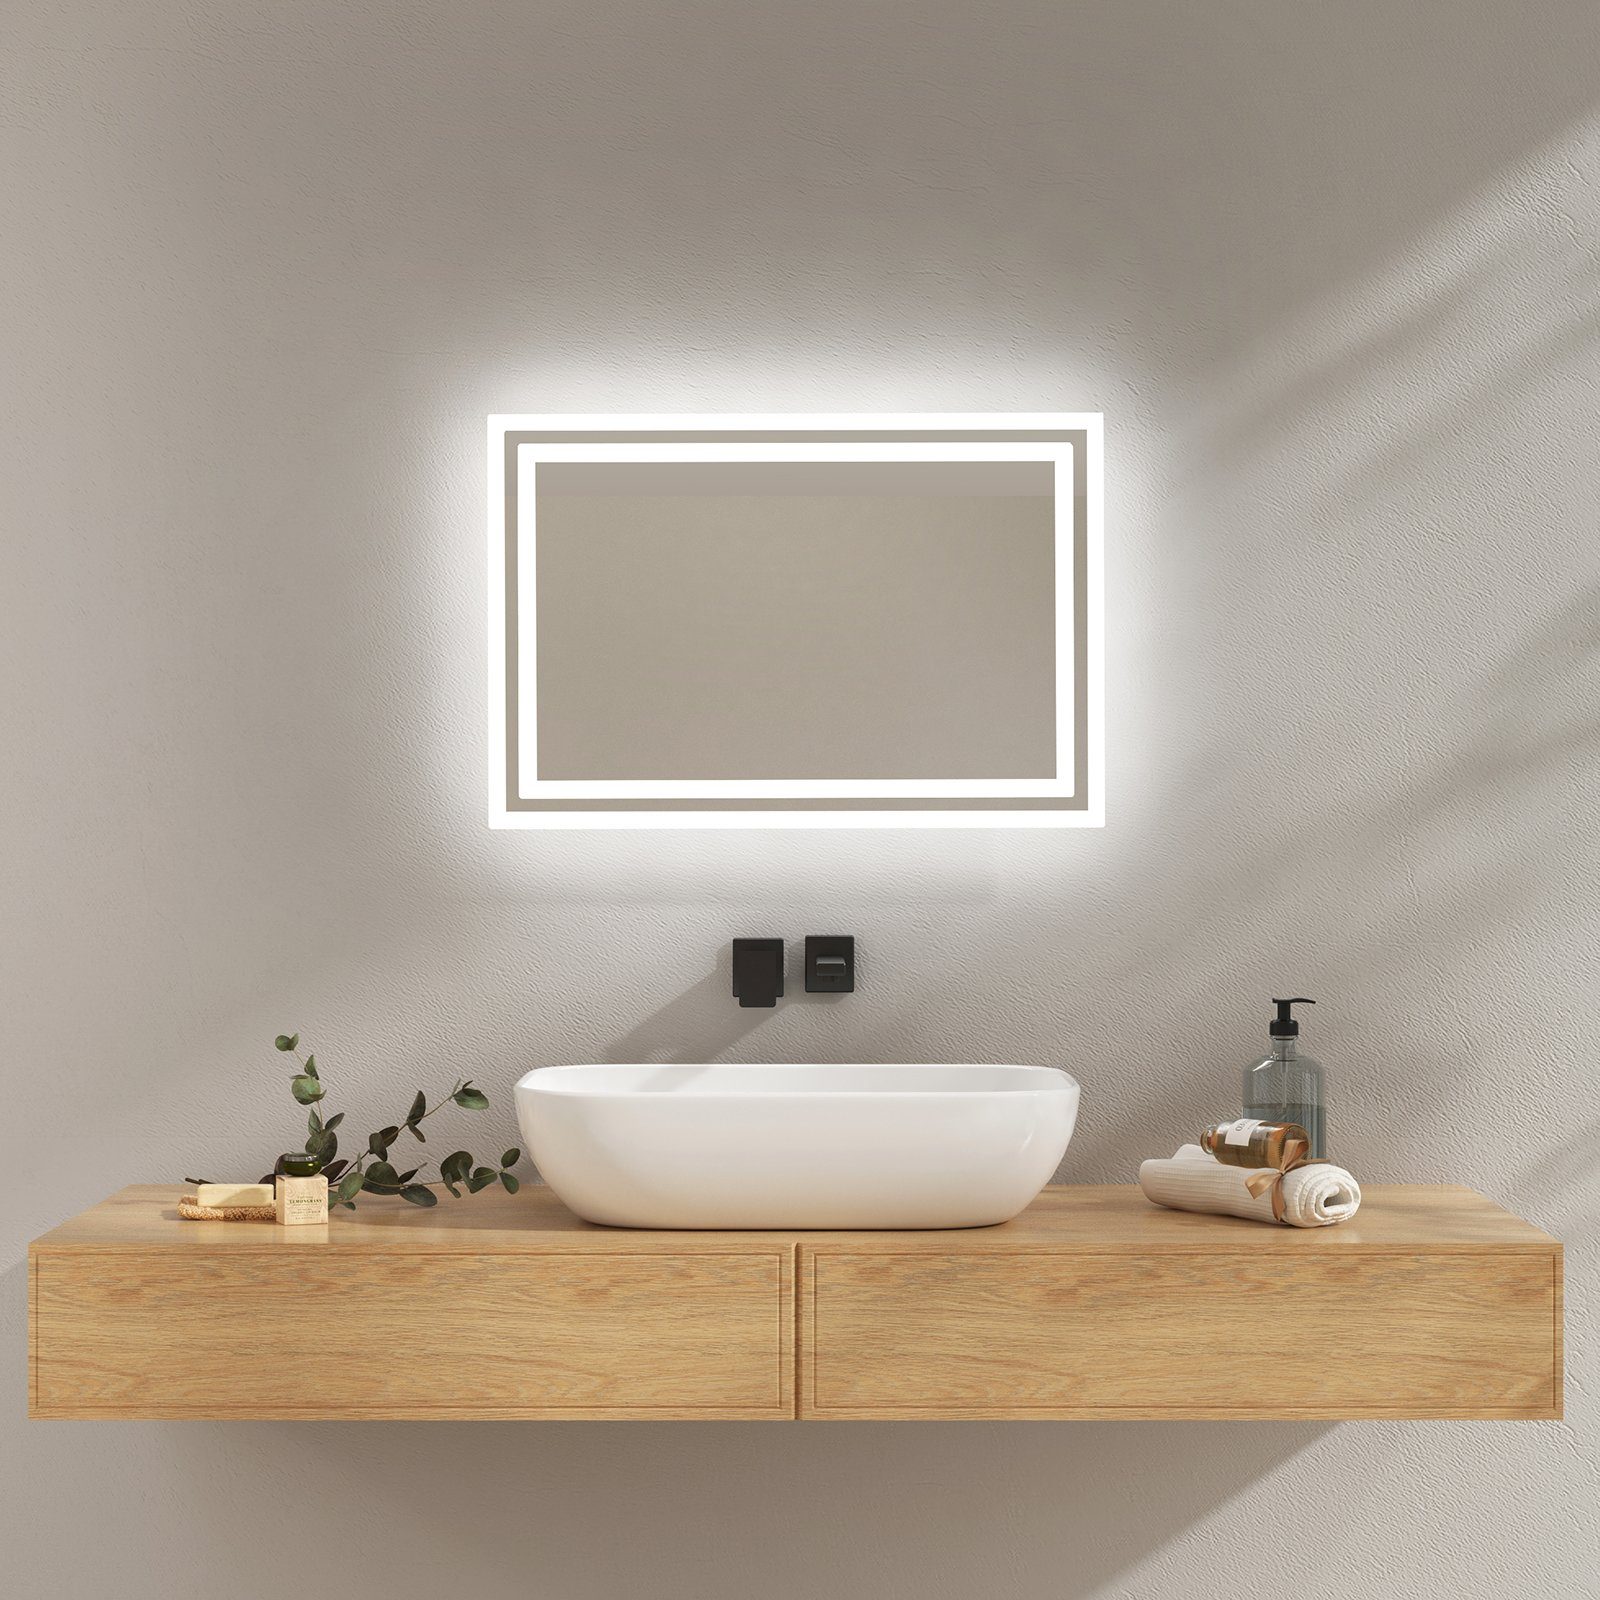 EMKE Badspiegel mit Beleuchtung LED Badezimmerspiegel Wandspiegel (Modell 4, Vertikal Horizontal möglich, Druckknopfschalter), Beschlagfrei, 2 Lichtfarben IP44